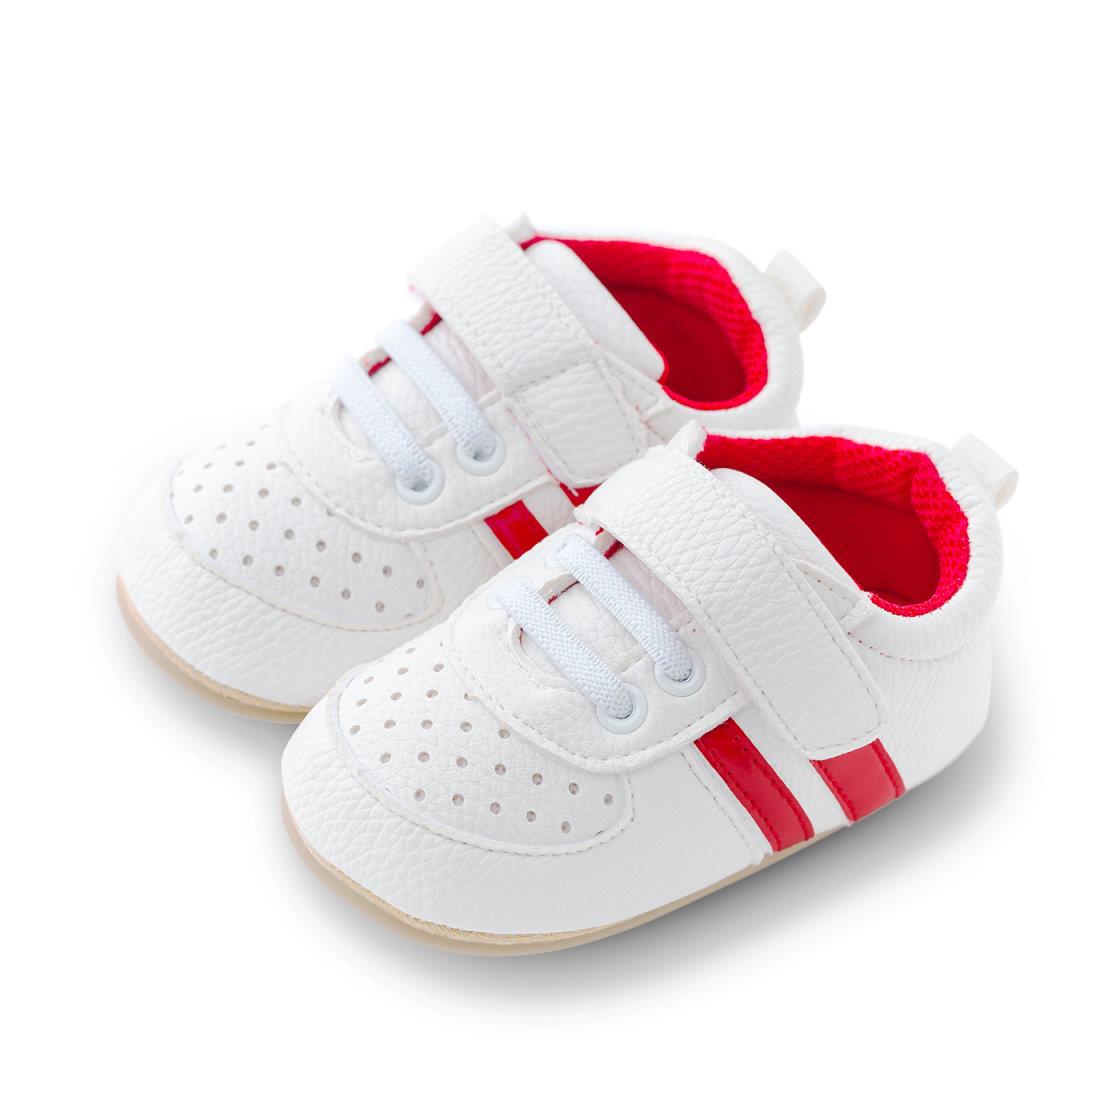 【NikoKids】軟Q底學步鞋(SG594A)紅條【柔軟舒適室內室外皆宜】